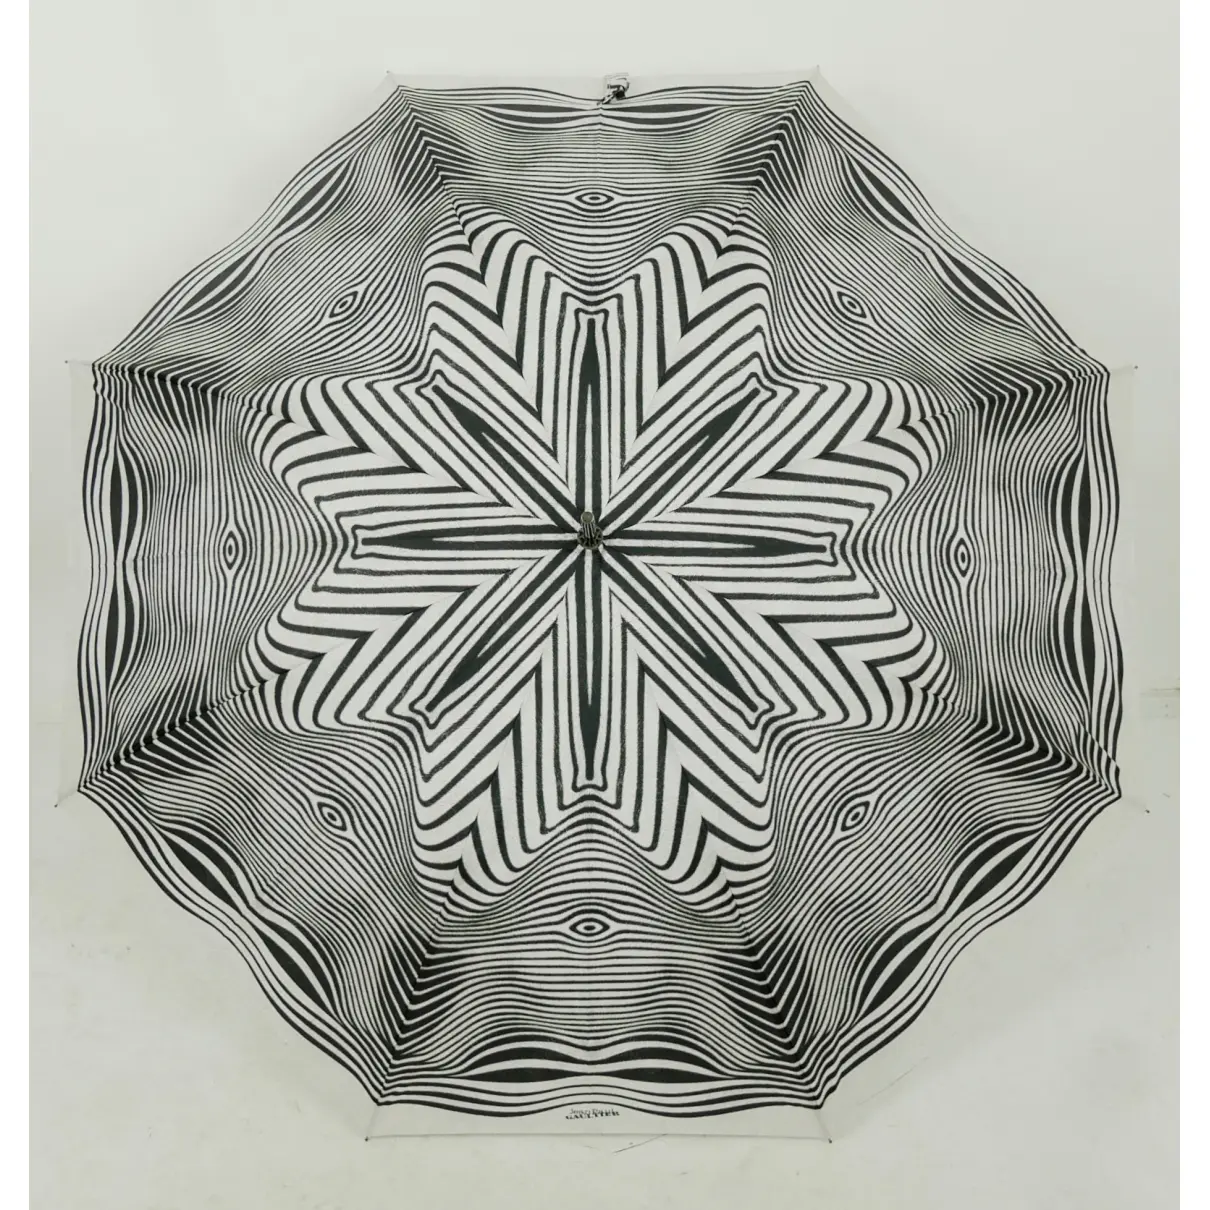 Buy Jean Paul Gaultier Umbrella online - Vintage